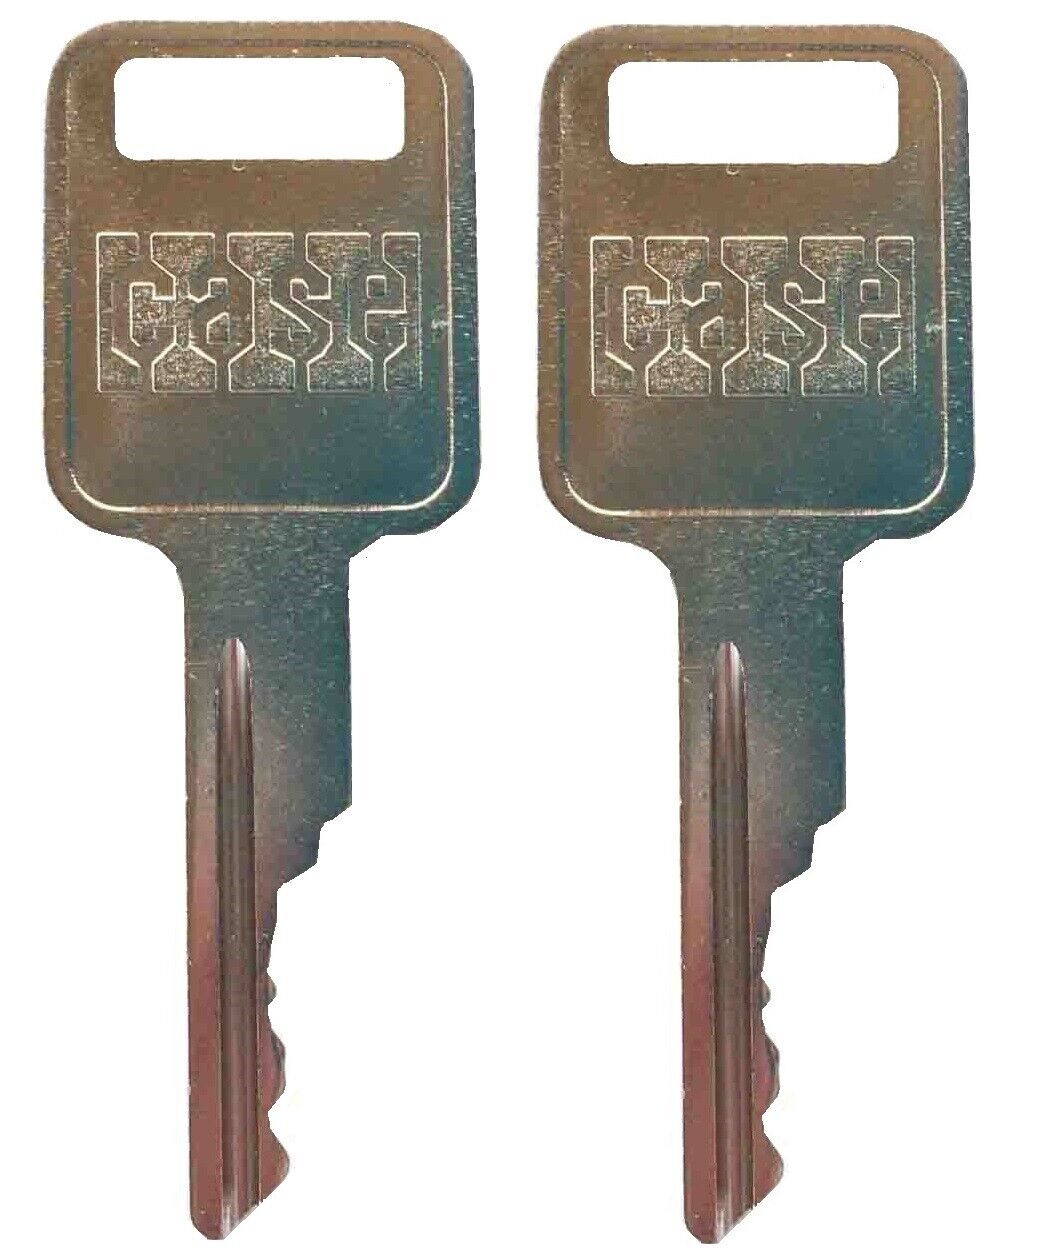 2 Bobcat Ignition Keys for models 751 753 763 773 863 873 883 963 Skid Steer 